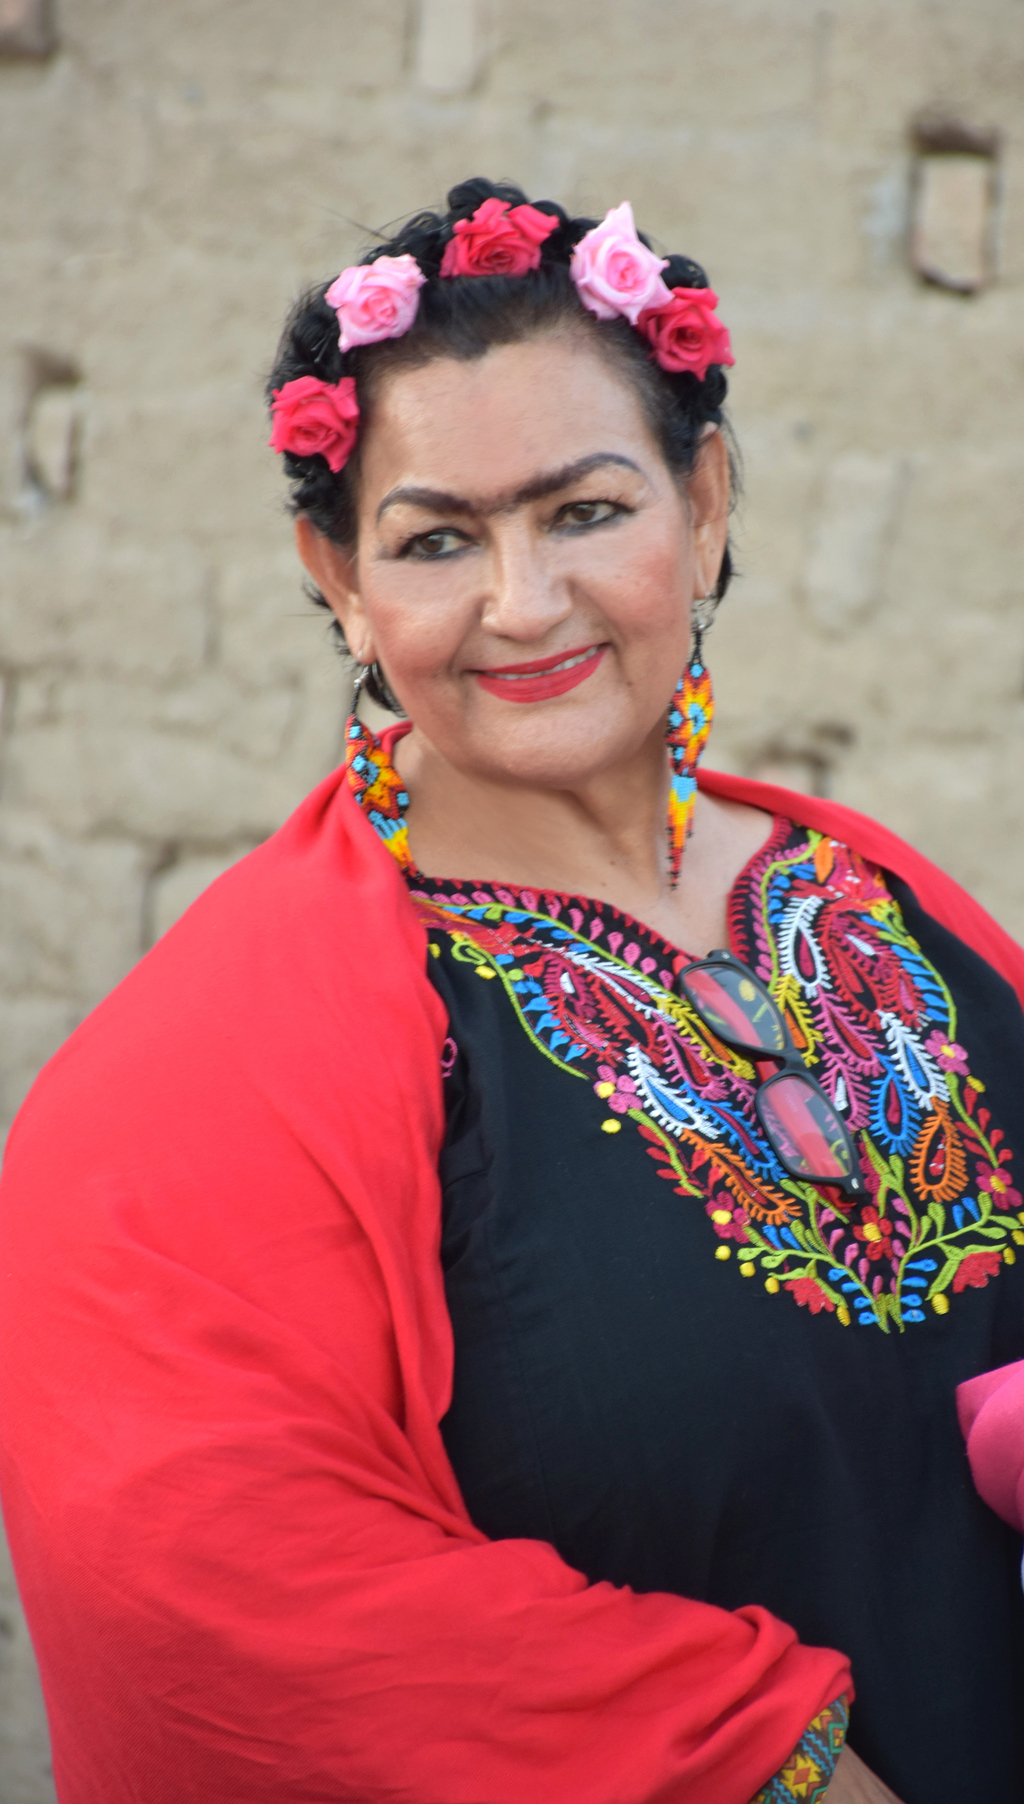 MVZ. Martha Lourdes Robles Arellano al estilo Frida Kalho en su fiesta de cumpleaños.